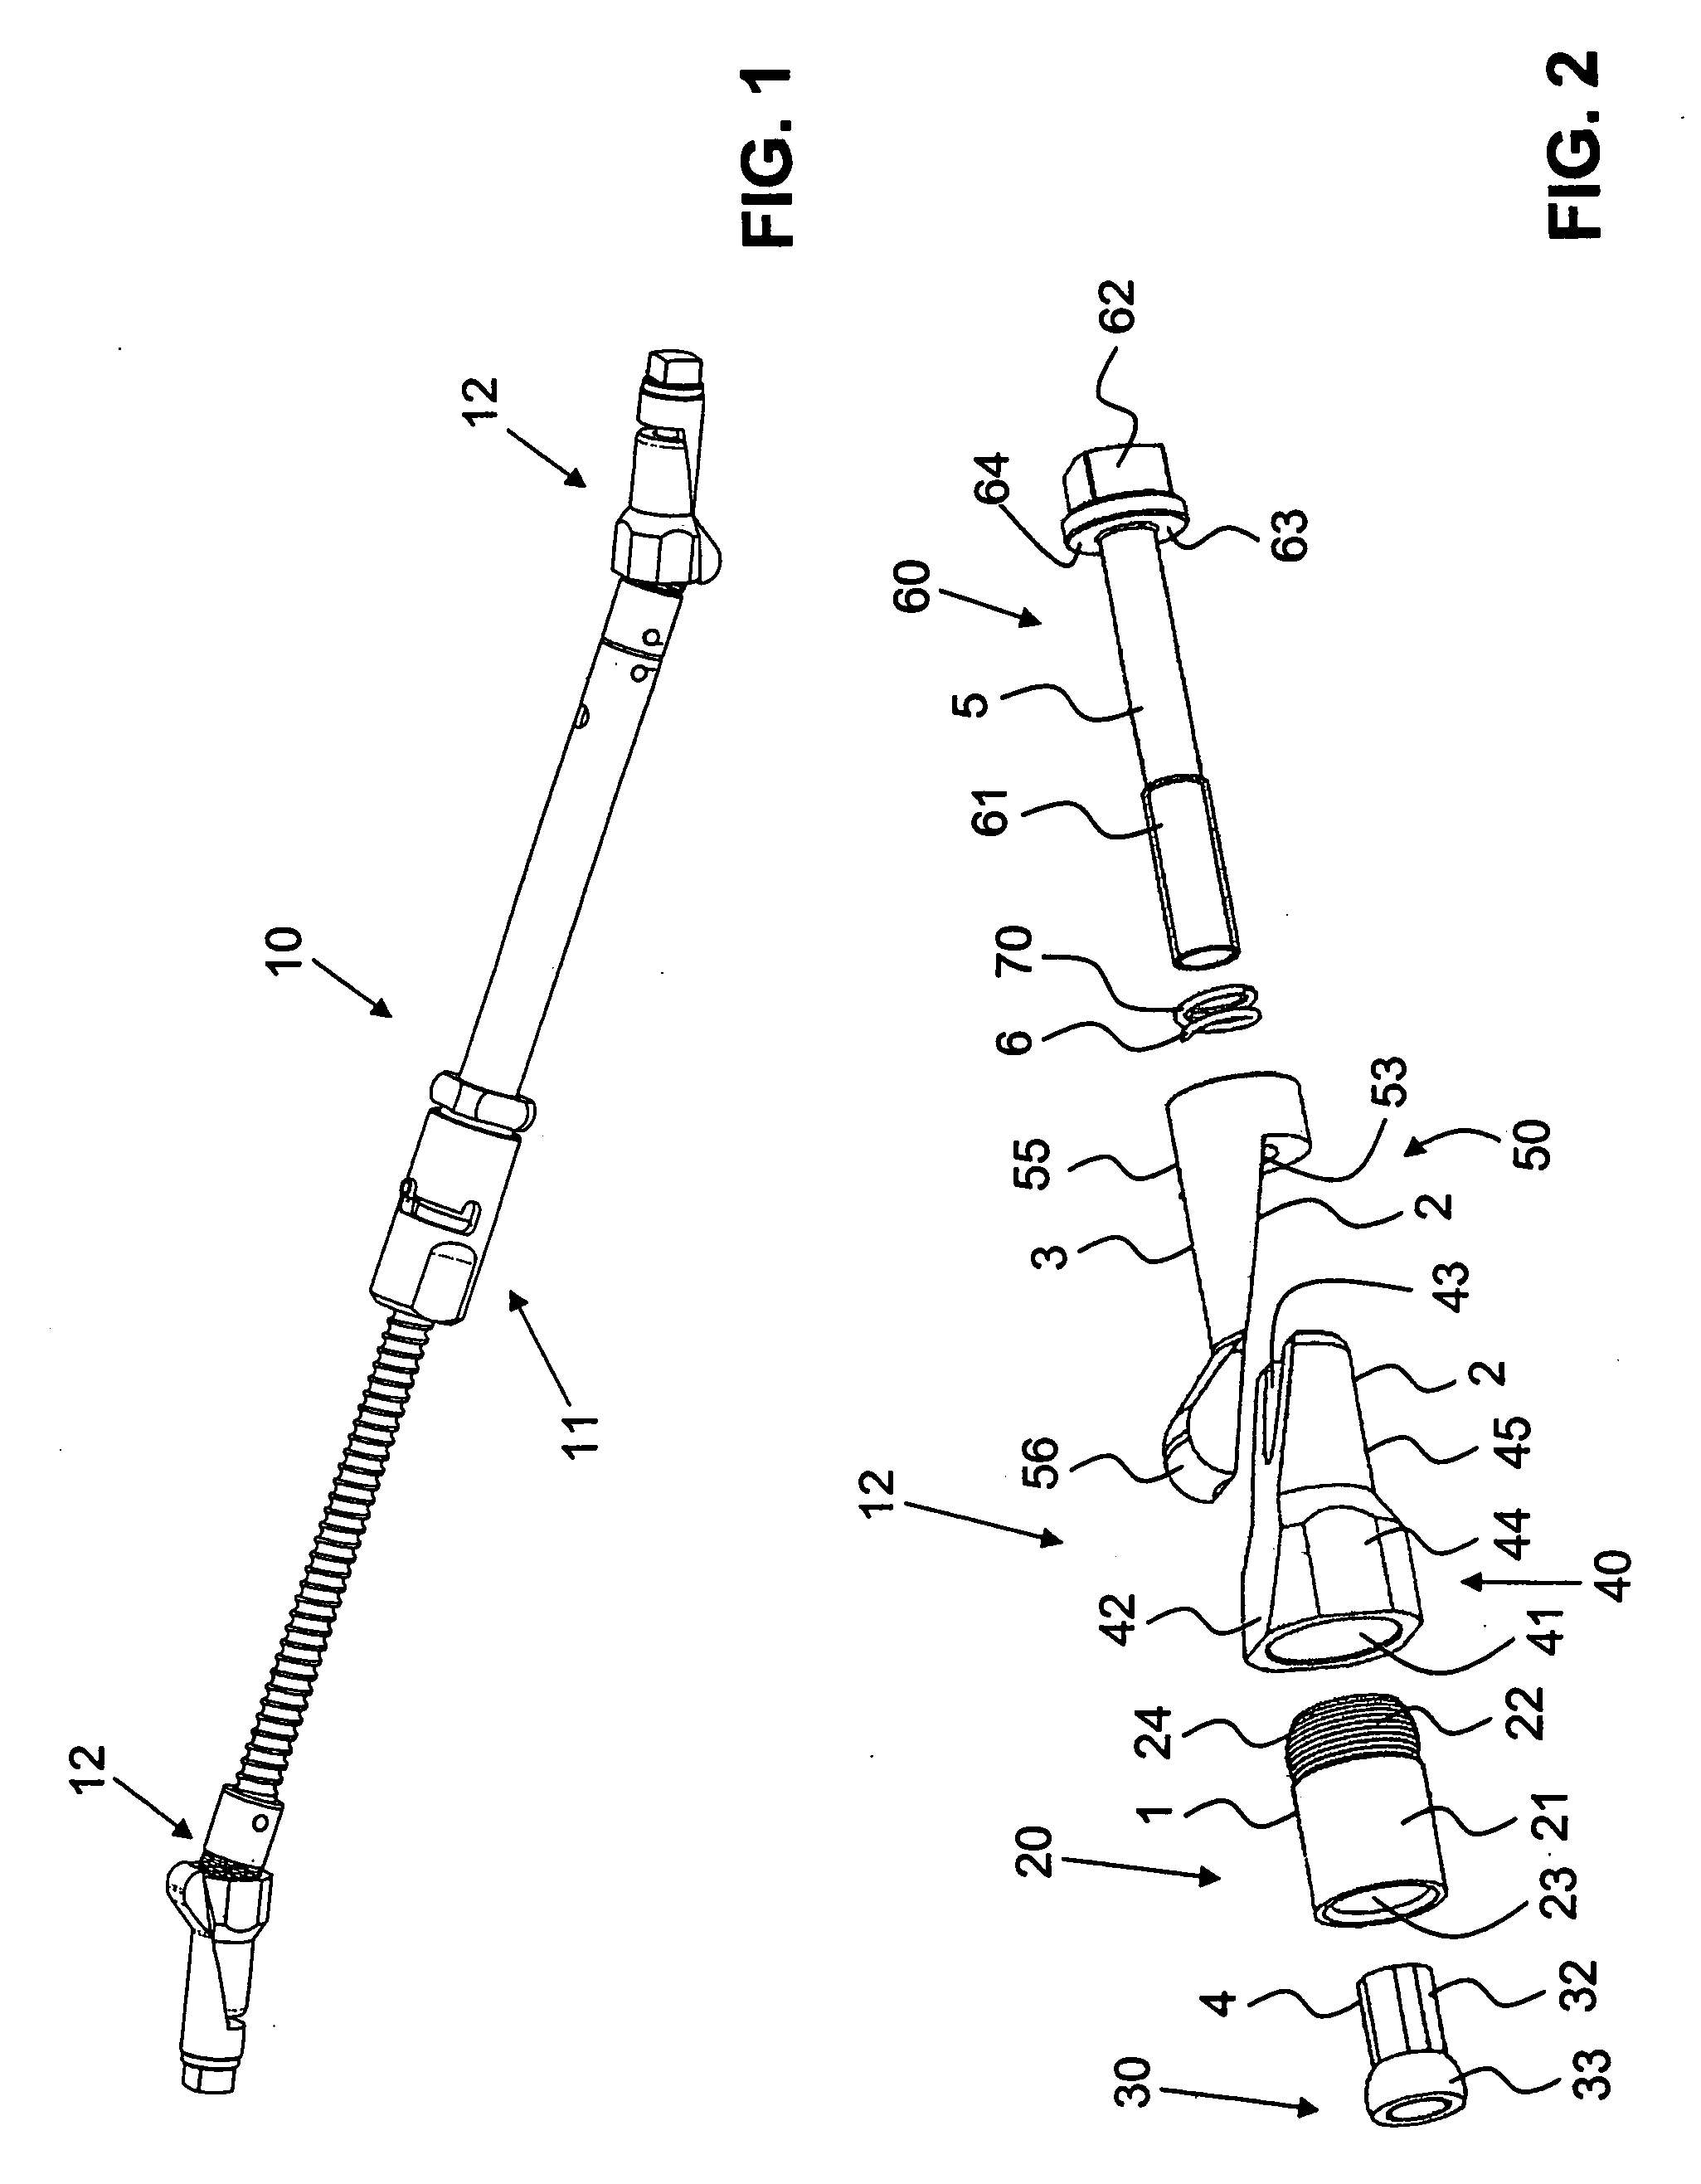 Strut joint for an external fixator